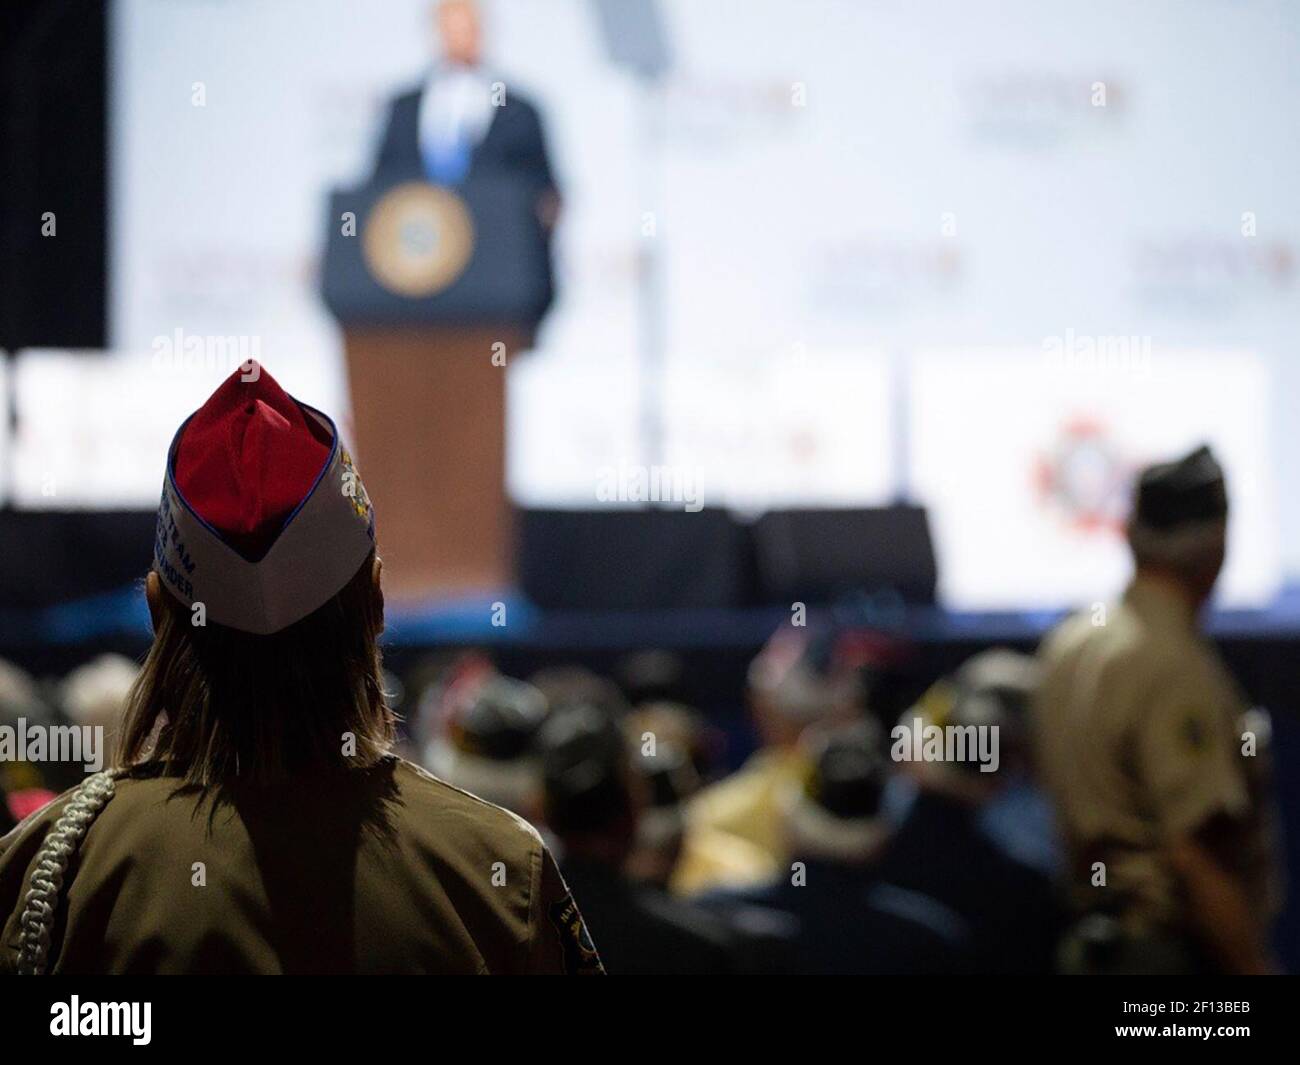 El presidente Donald Trump hace comentarios en la conferencia nacional de Veteranos de las guerras extranjeras en Kansas City, Missouri, el 24 2018 de julio. Foto de stock